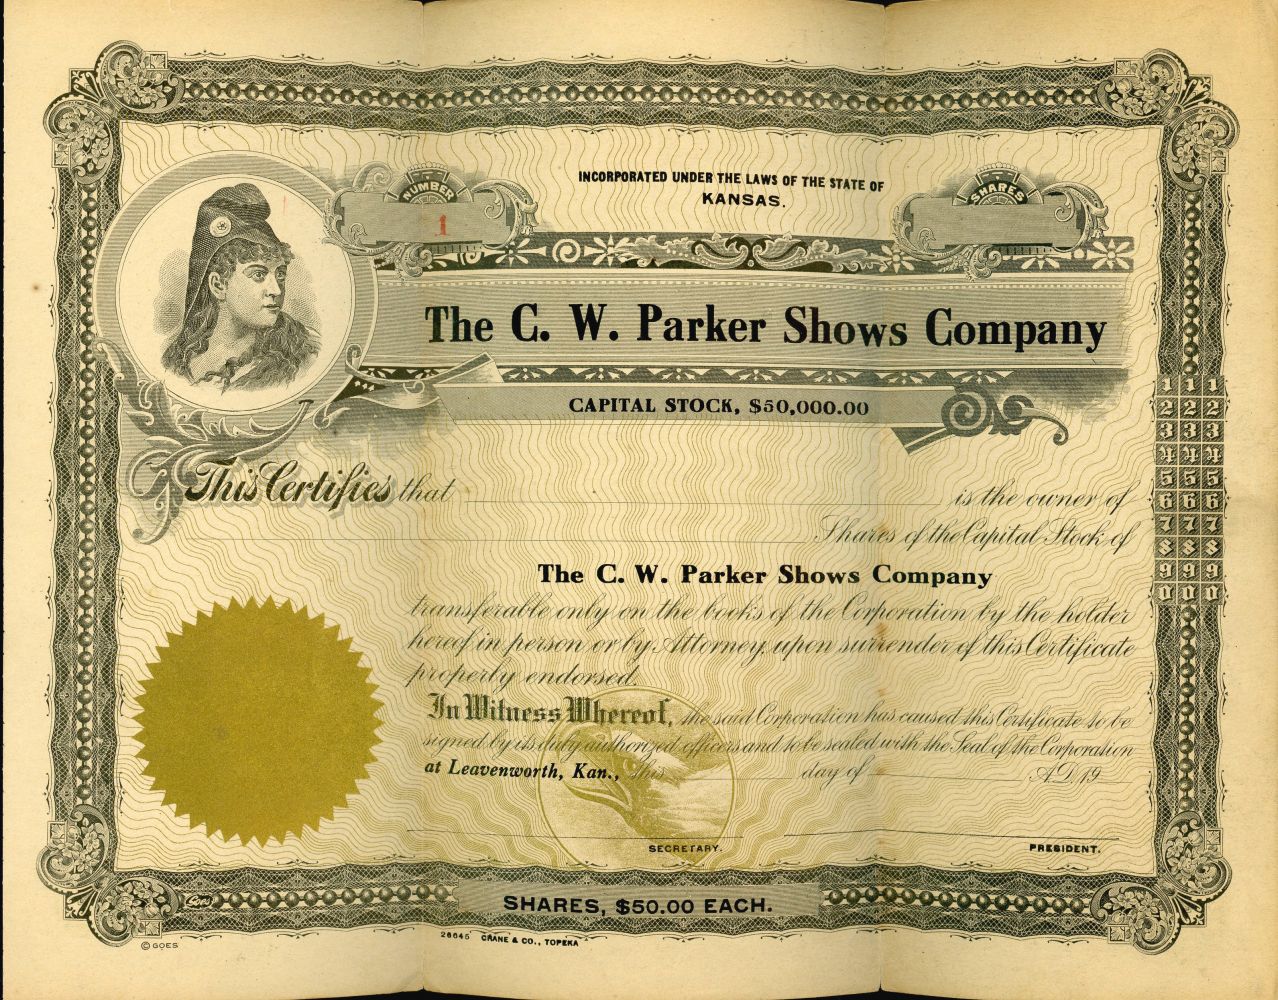 A COLLECTION OF C.W. PARKER AMUSEMENT CO. EPHEMERA